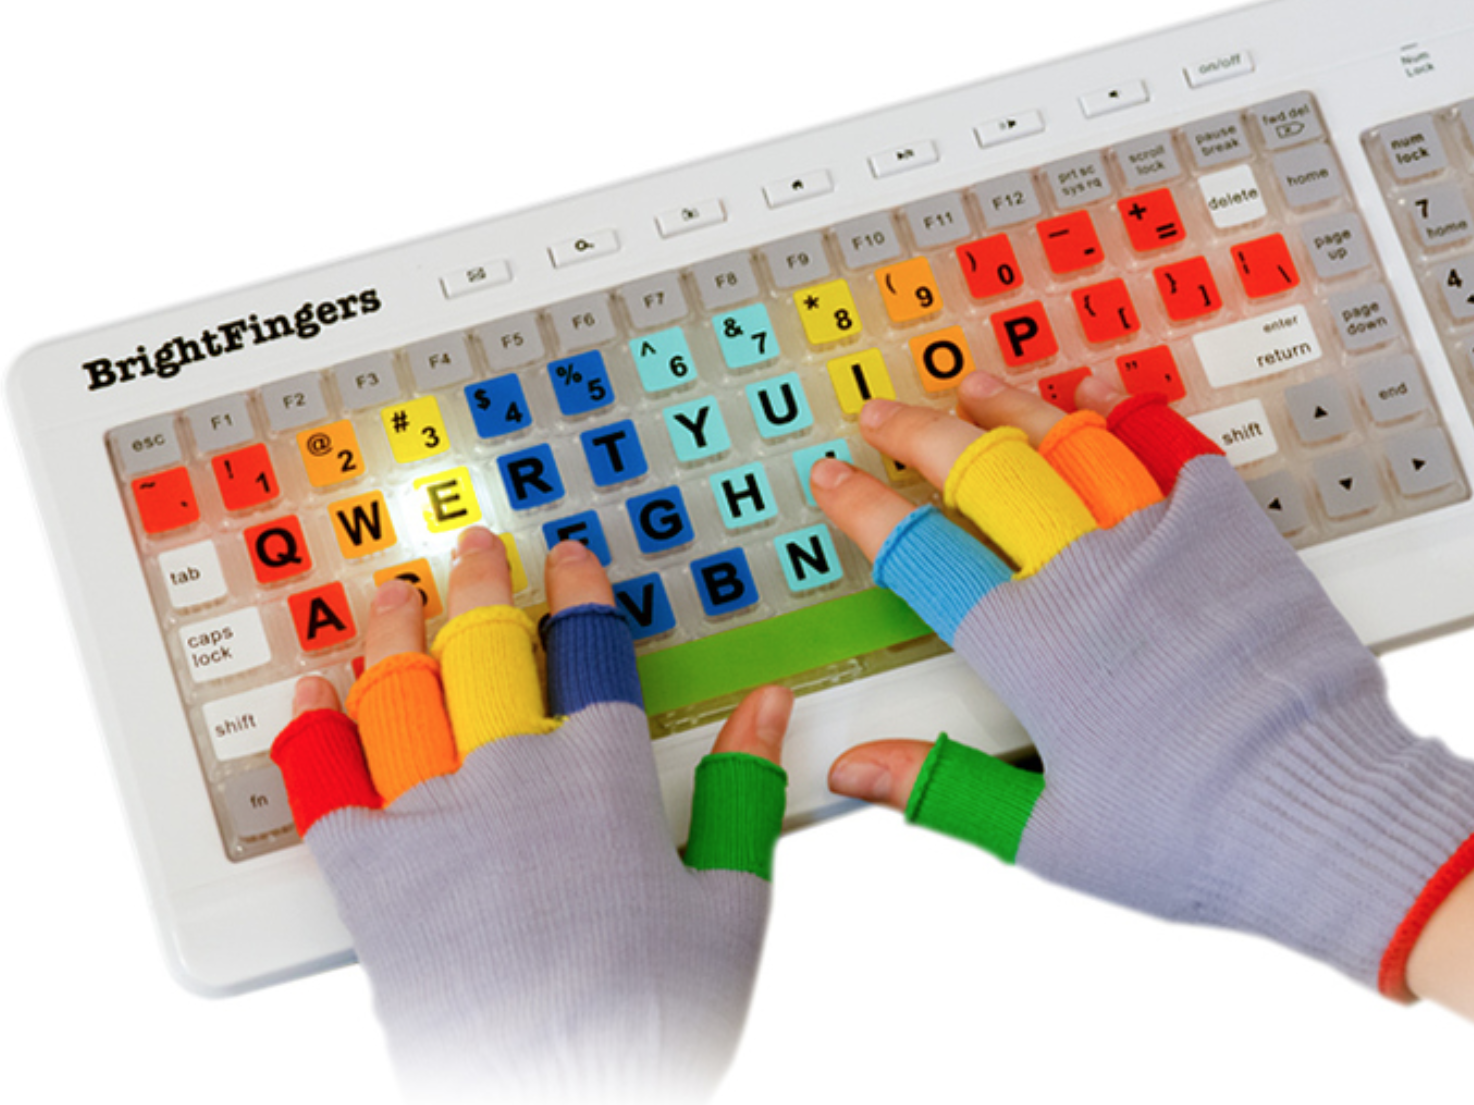 Тайпинг клавиатуры. Цветная клавиатура для обучения печати. Tutorial for typing. Tutorial typing fingers. Tutorial for typing fingers.